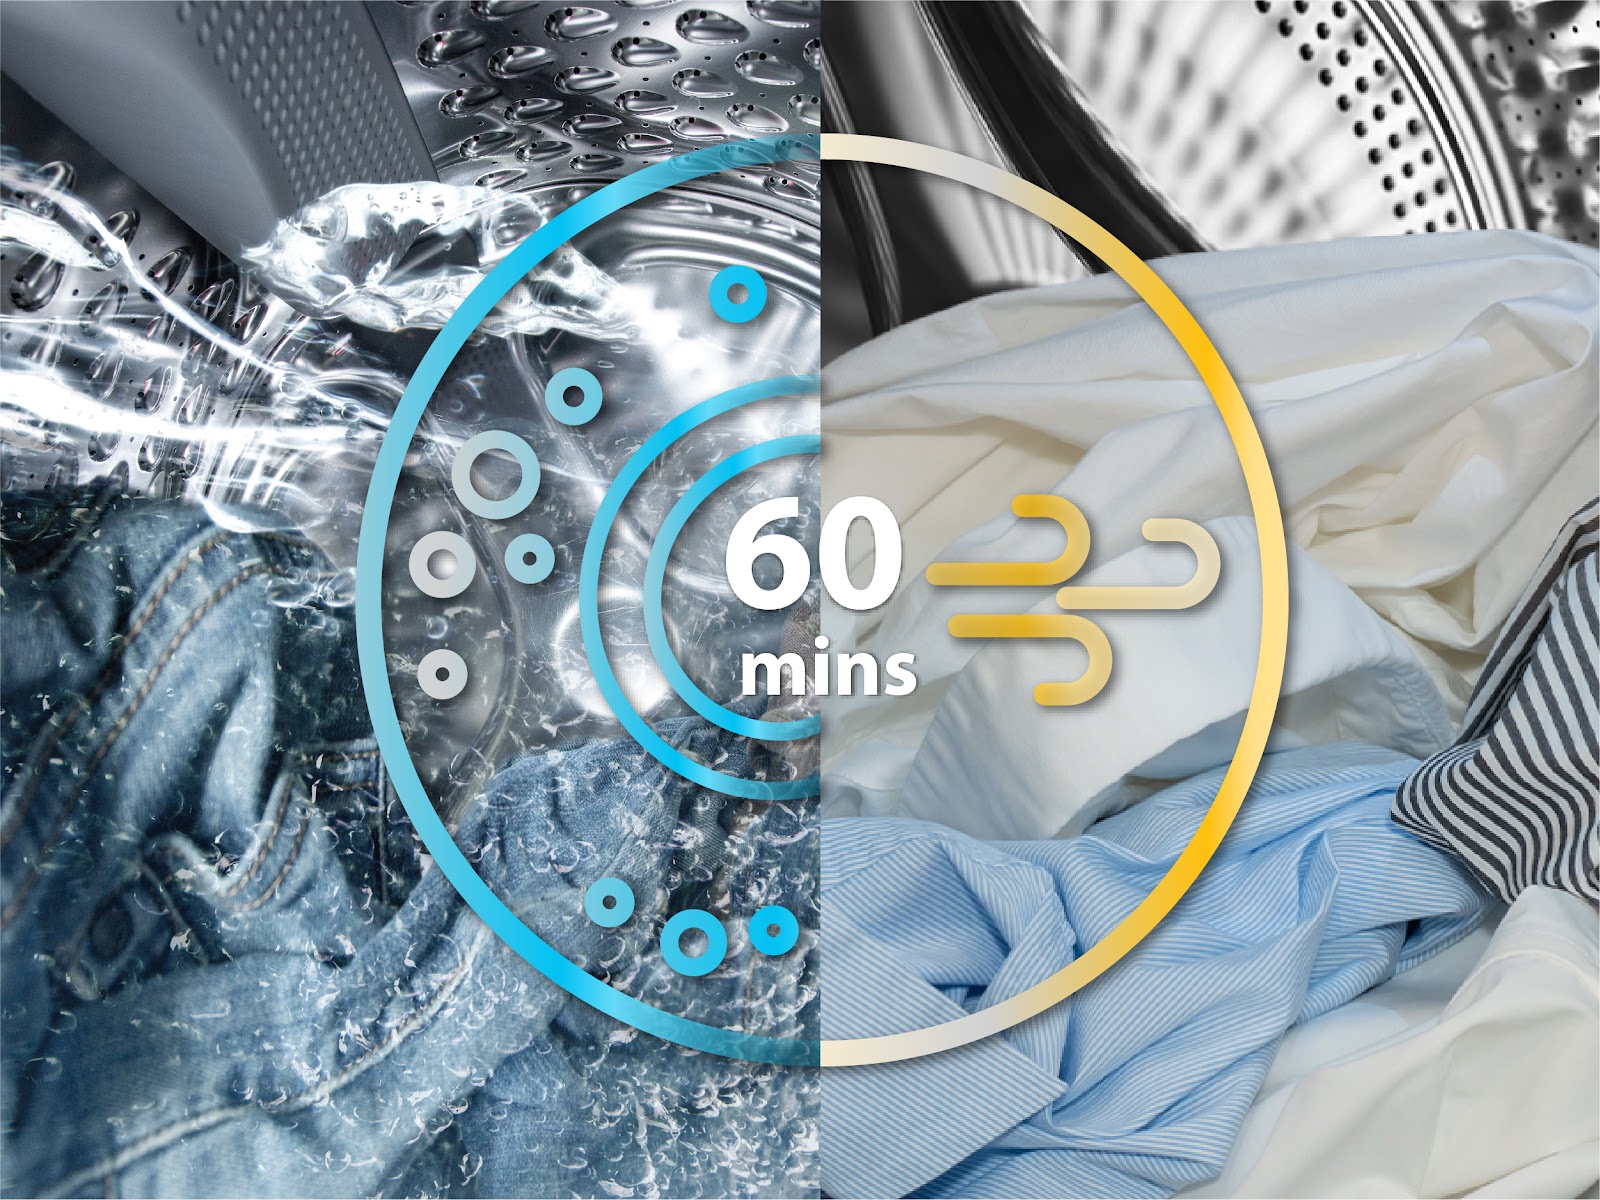 Máy giặt sấy whirlpool giặt sấy 60 phút